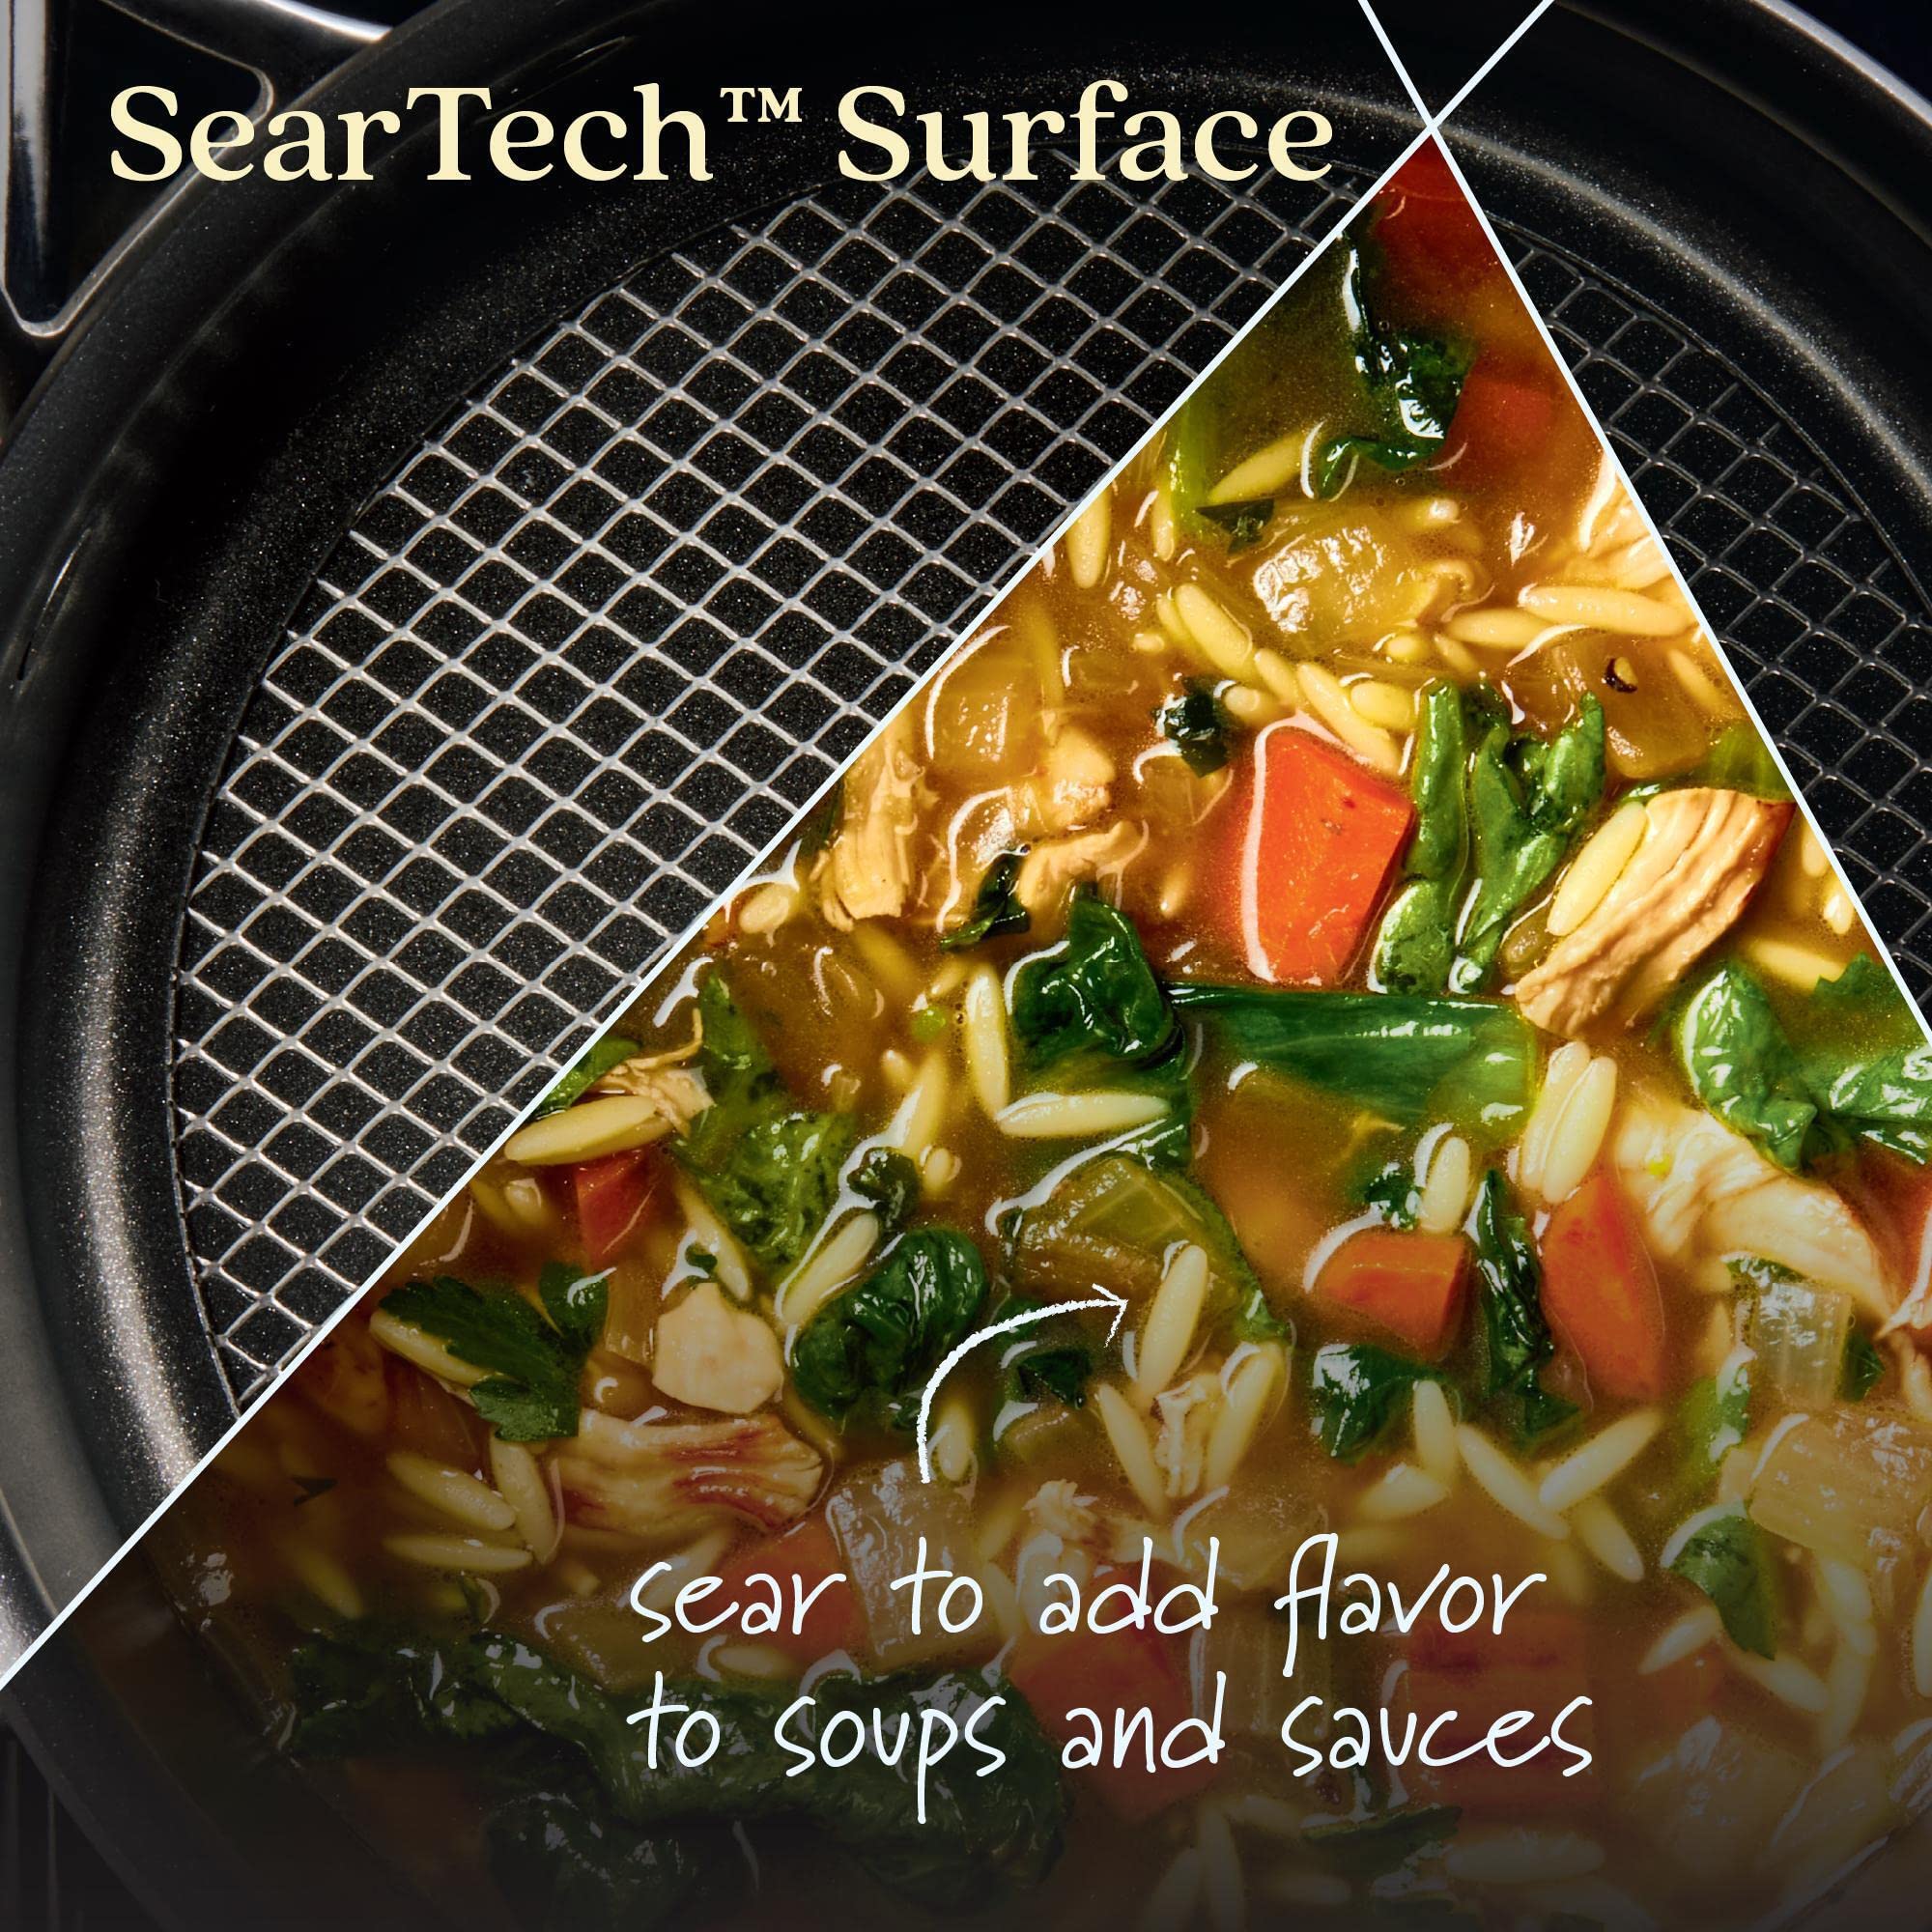 Anolon X SearTech Aluminum Nonstick Cookware Saucepan with Lid, 3-Quart, Super Dark Gray